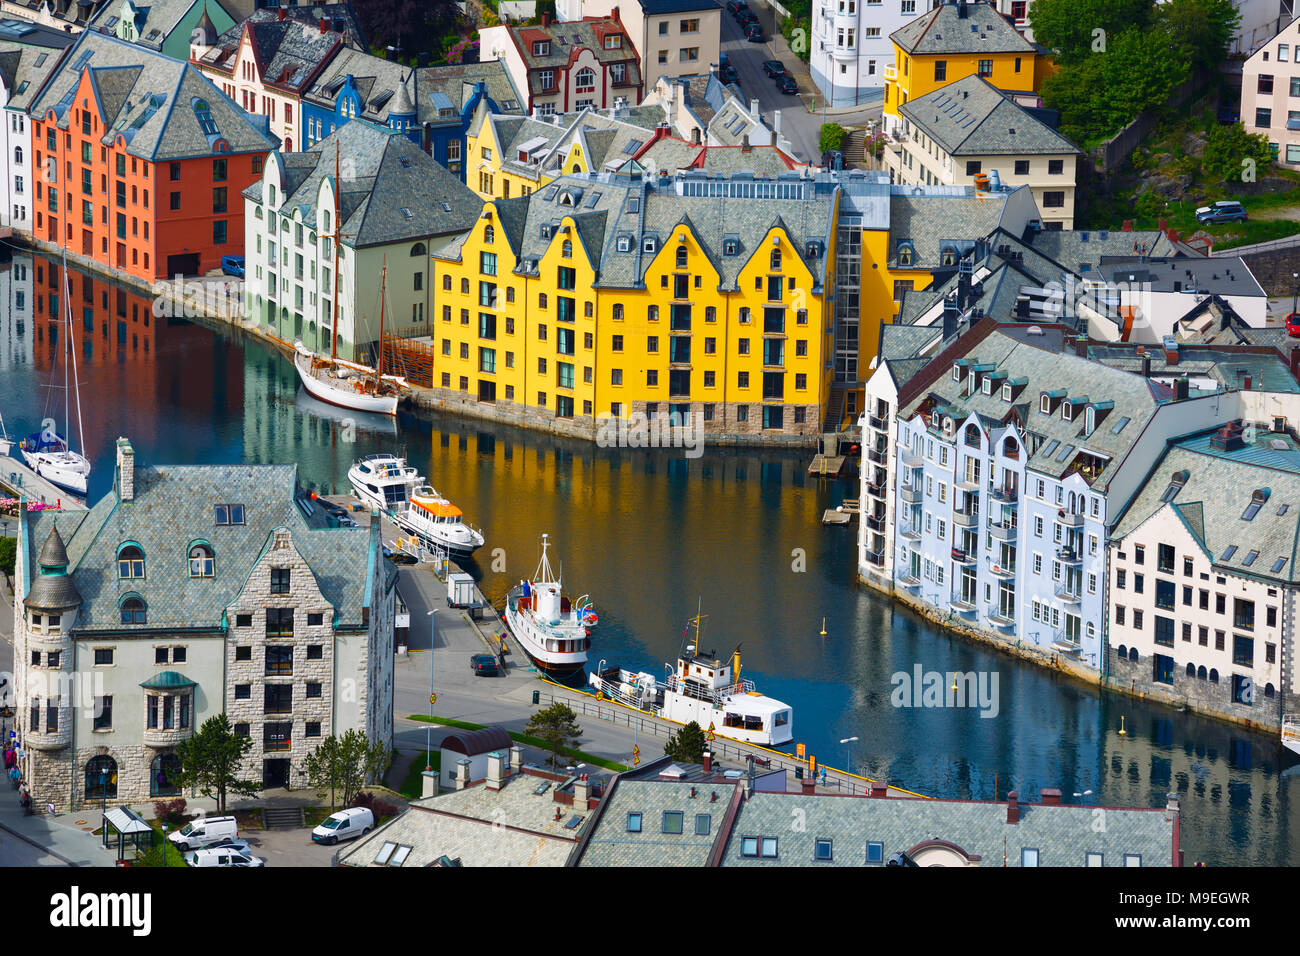 Aksla à la ville d'Alesund , la Norvège. C'est un port de mer, et est réputé pour sa concentration d'architecture Art Nouveau. Banque D'Images